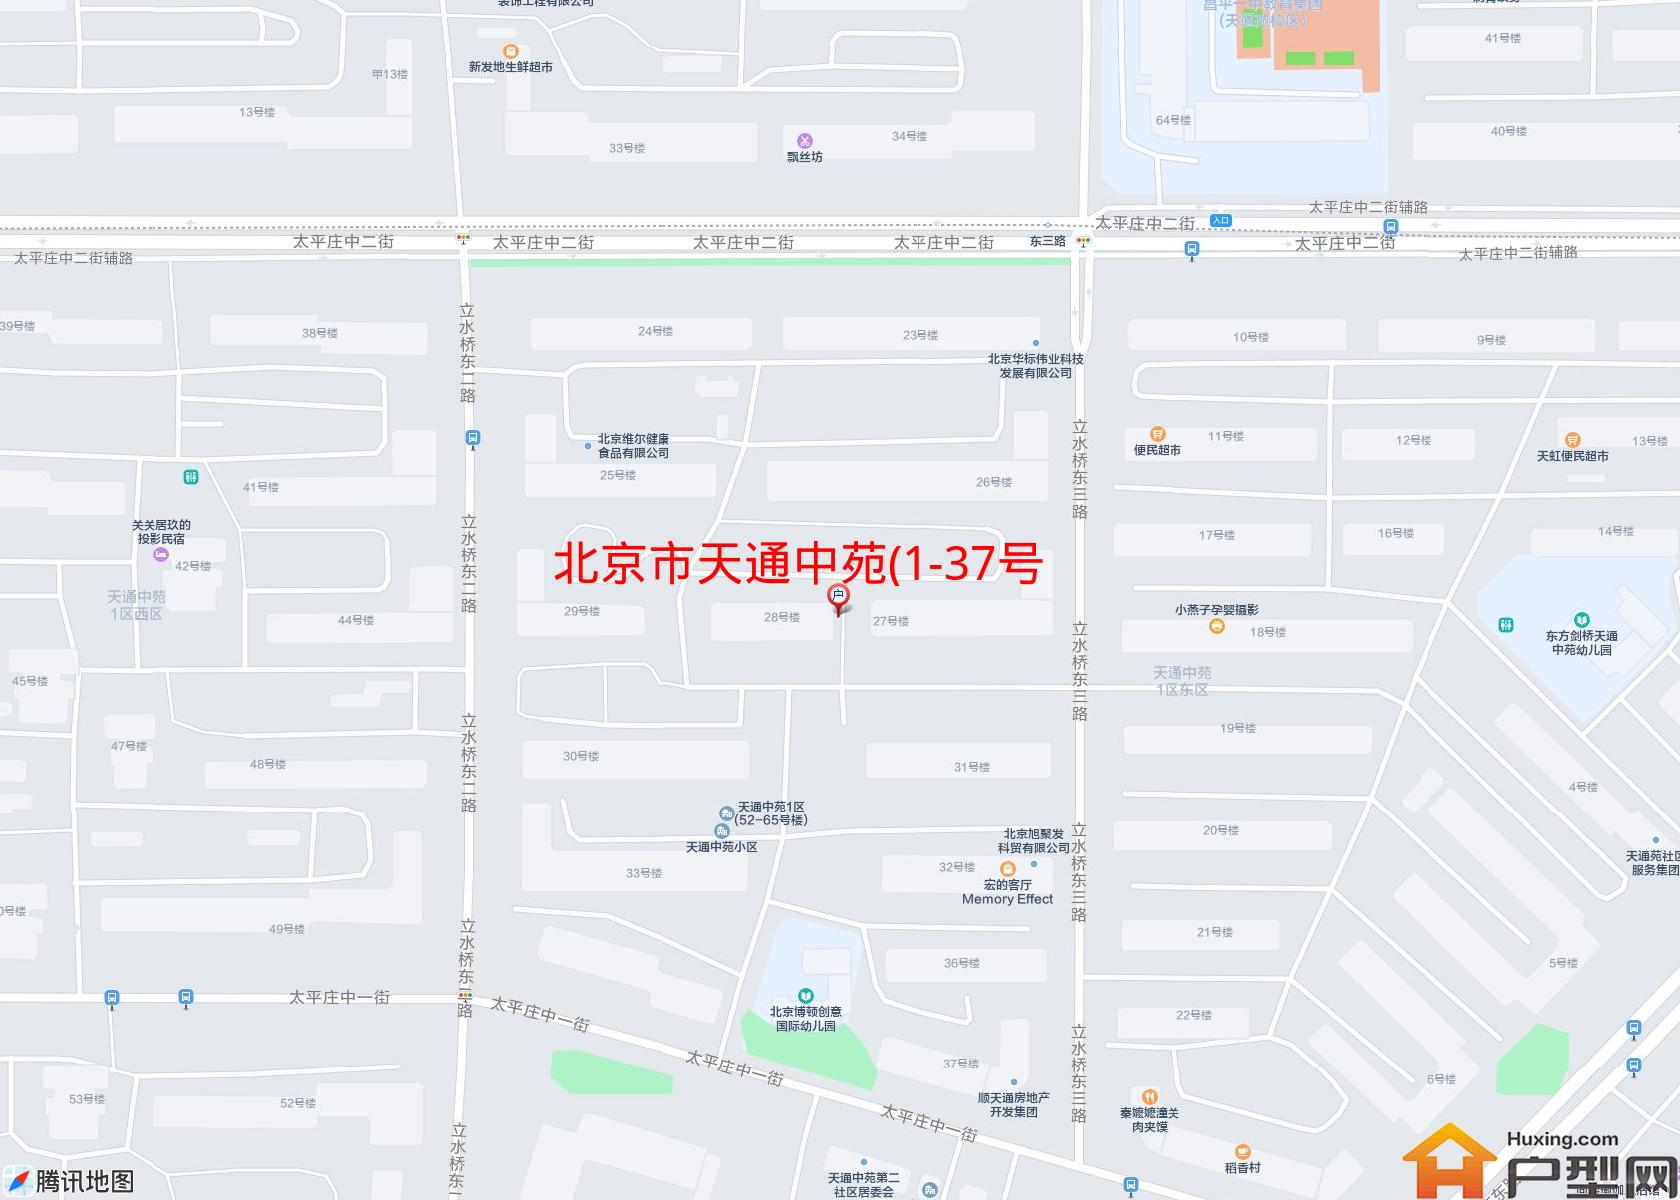 天通中苑(1-37号楼)小区 - 户型网